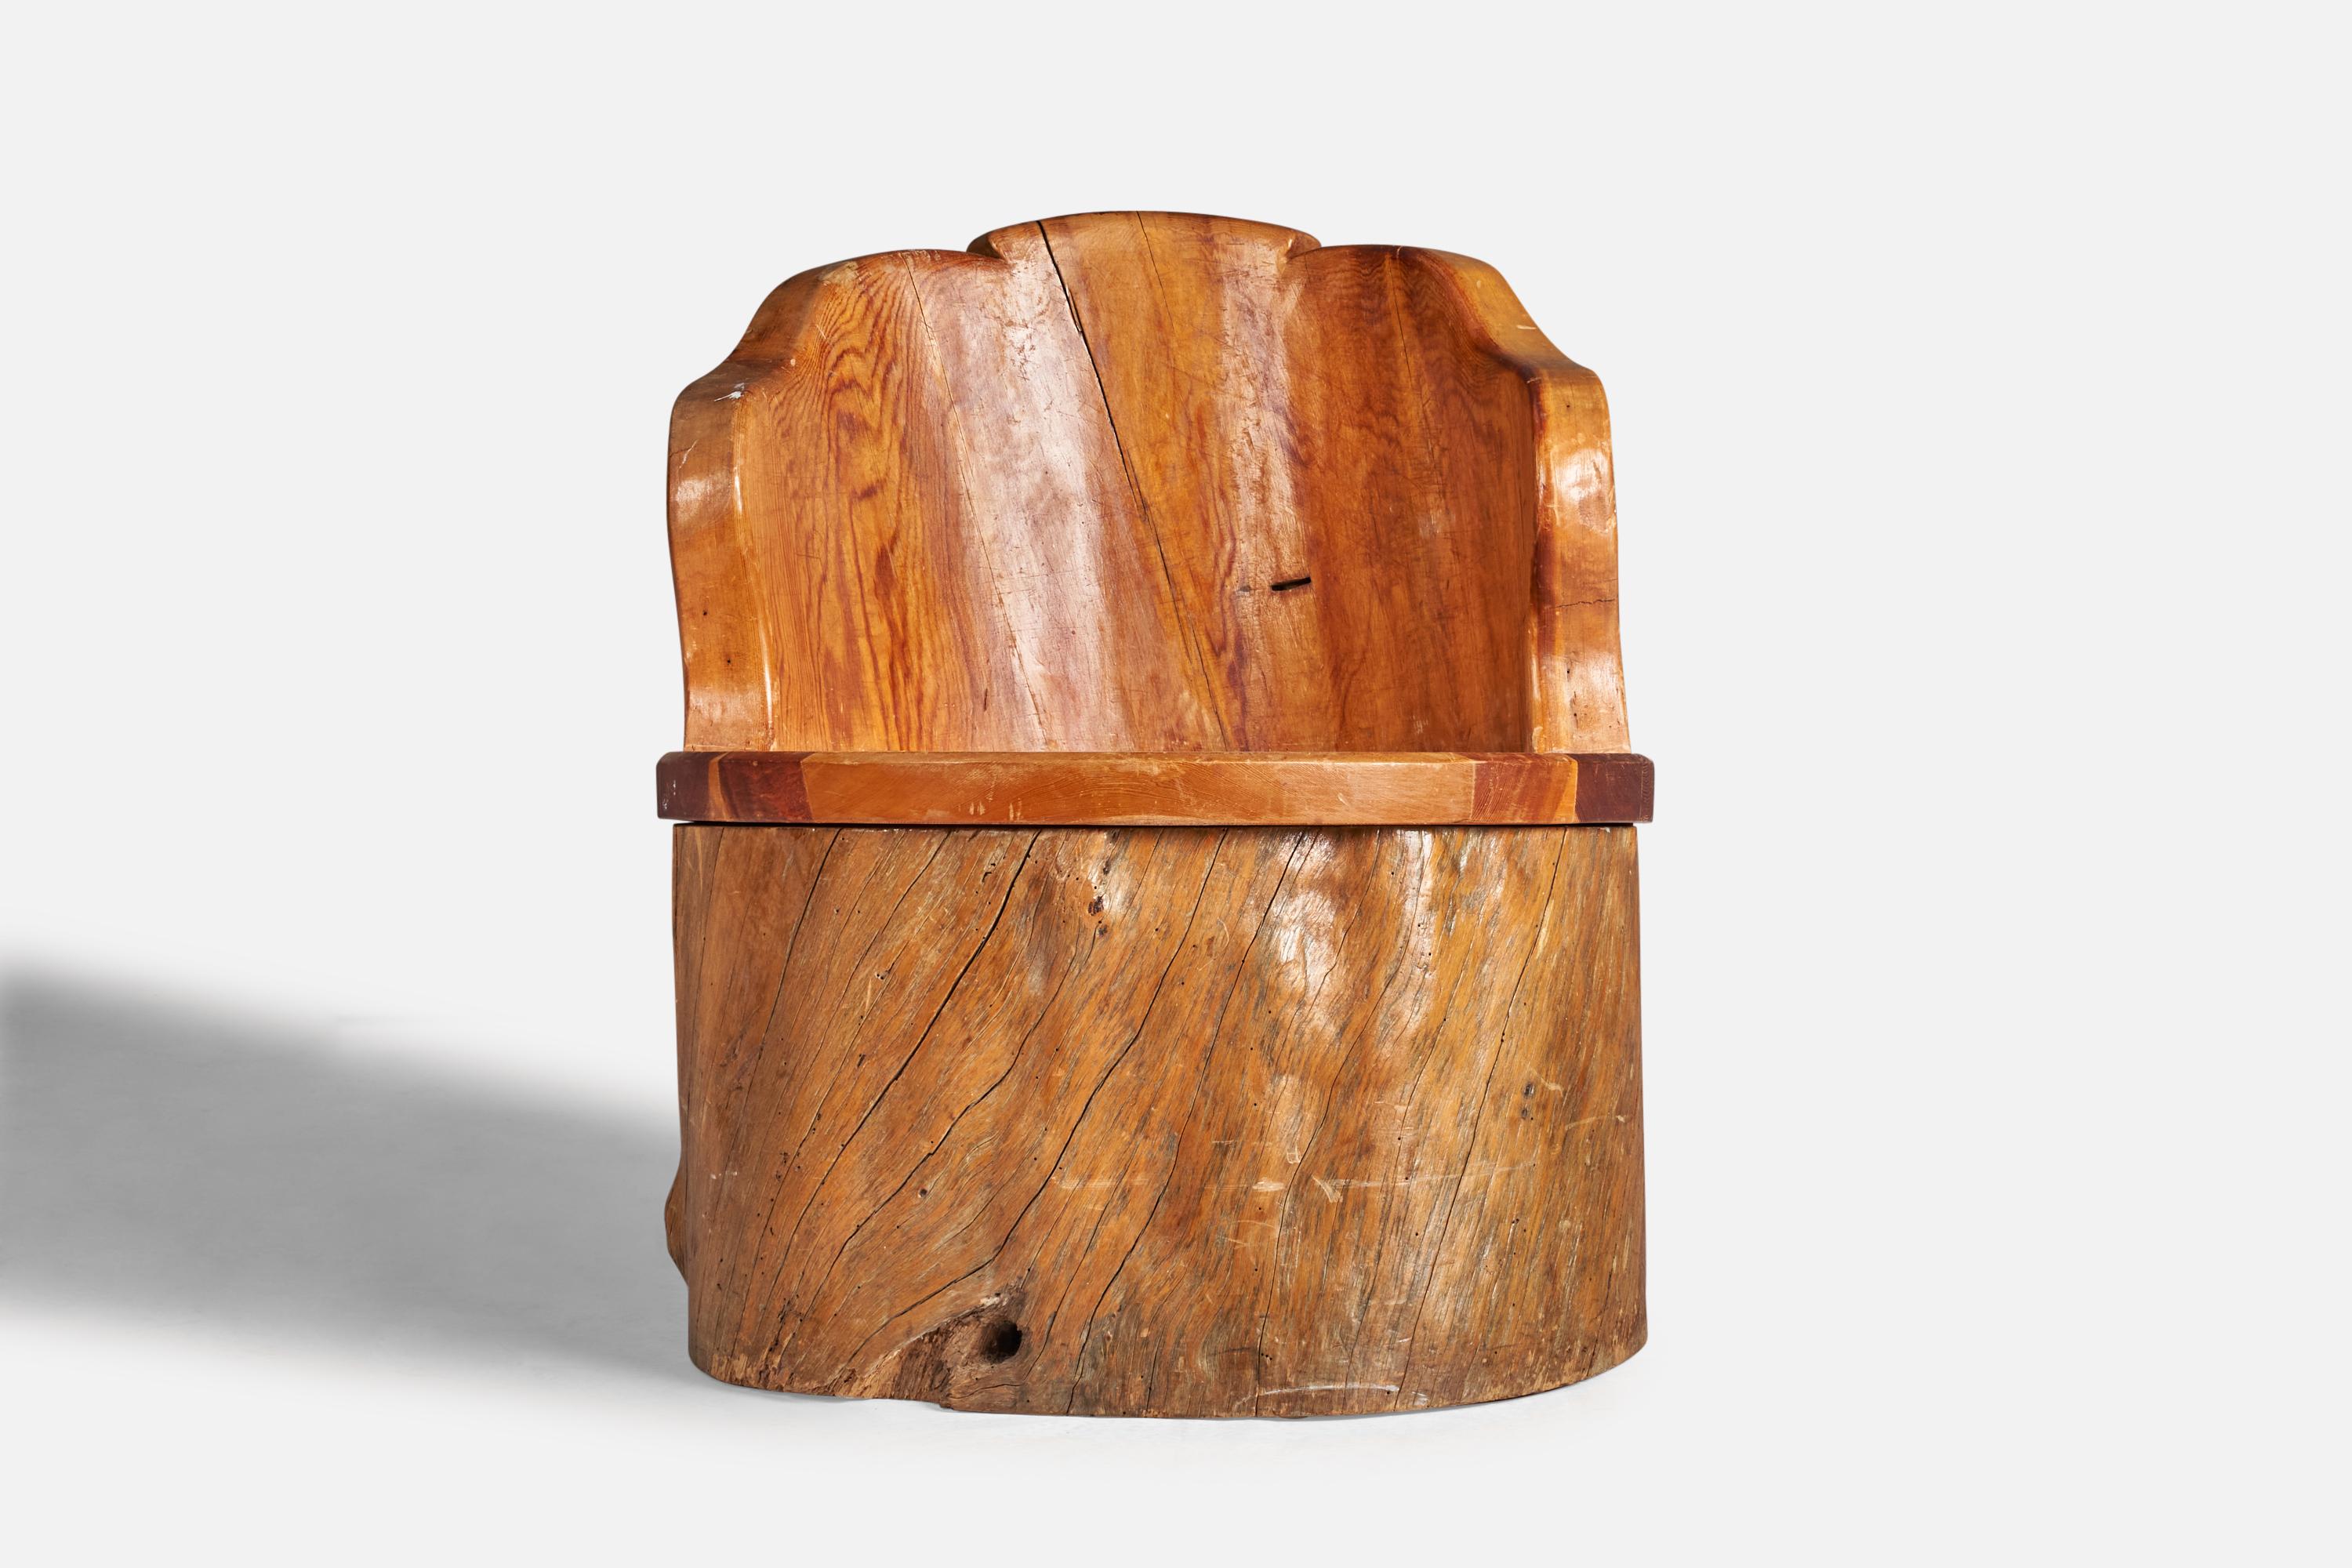 Beistell- oder Loungesessel aus Holz, entworfen und hergestellt in Schweden, ca. 1930er Jahre.

Sitzhöhe: 15